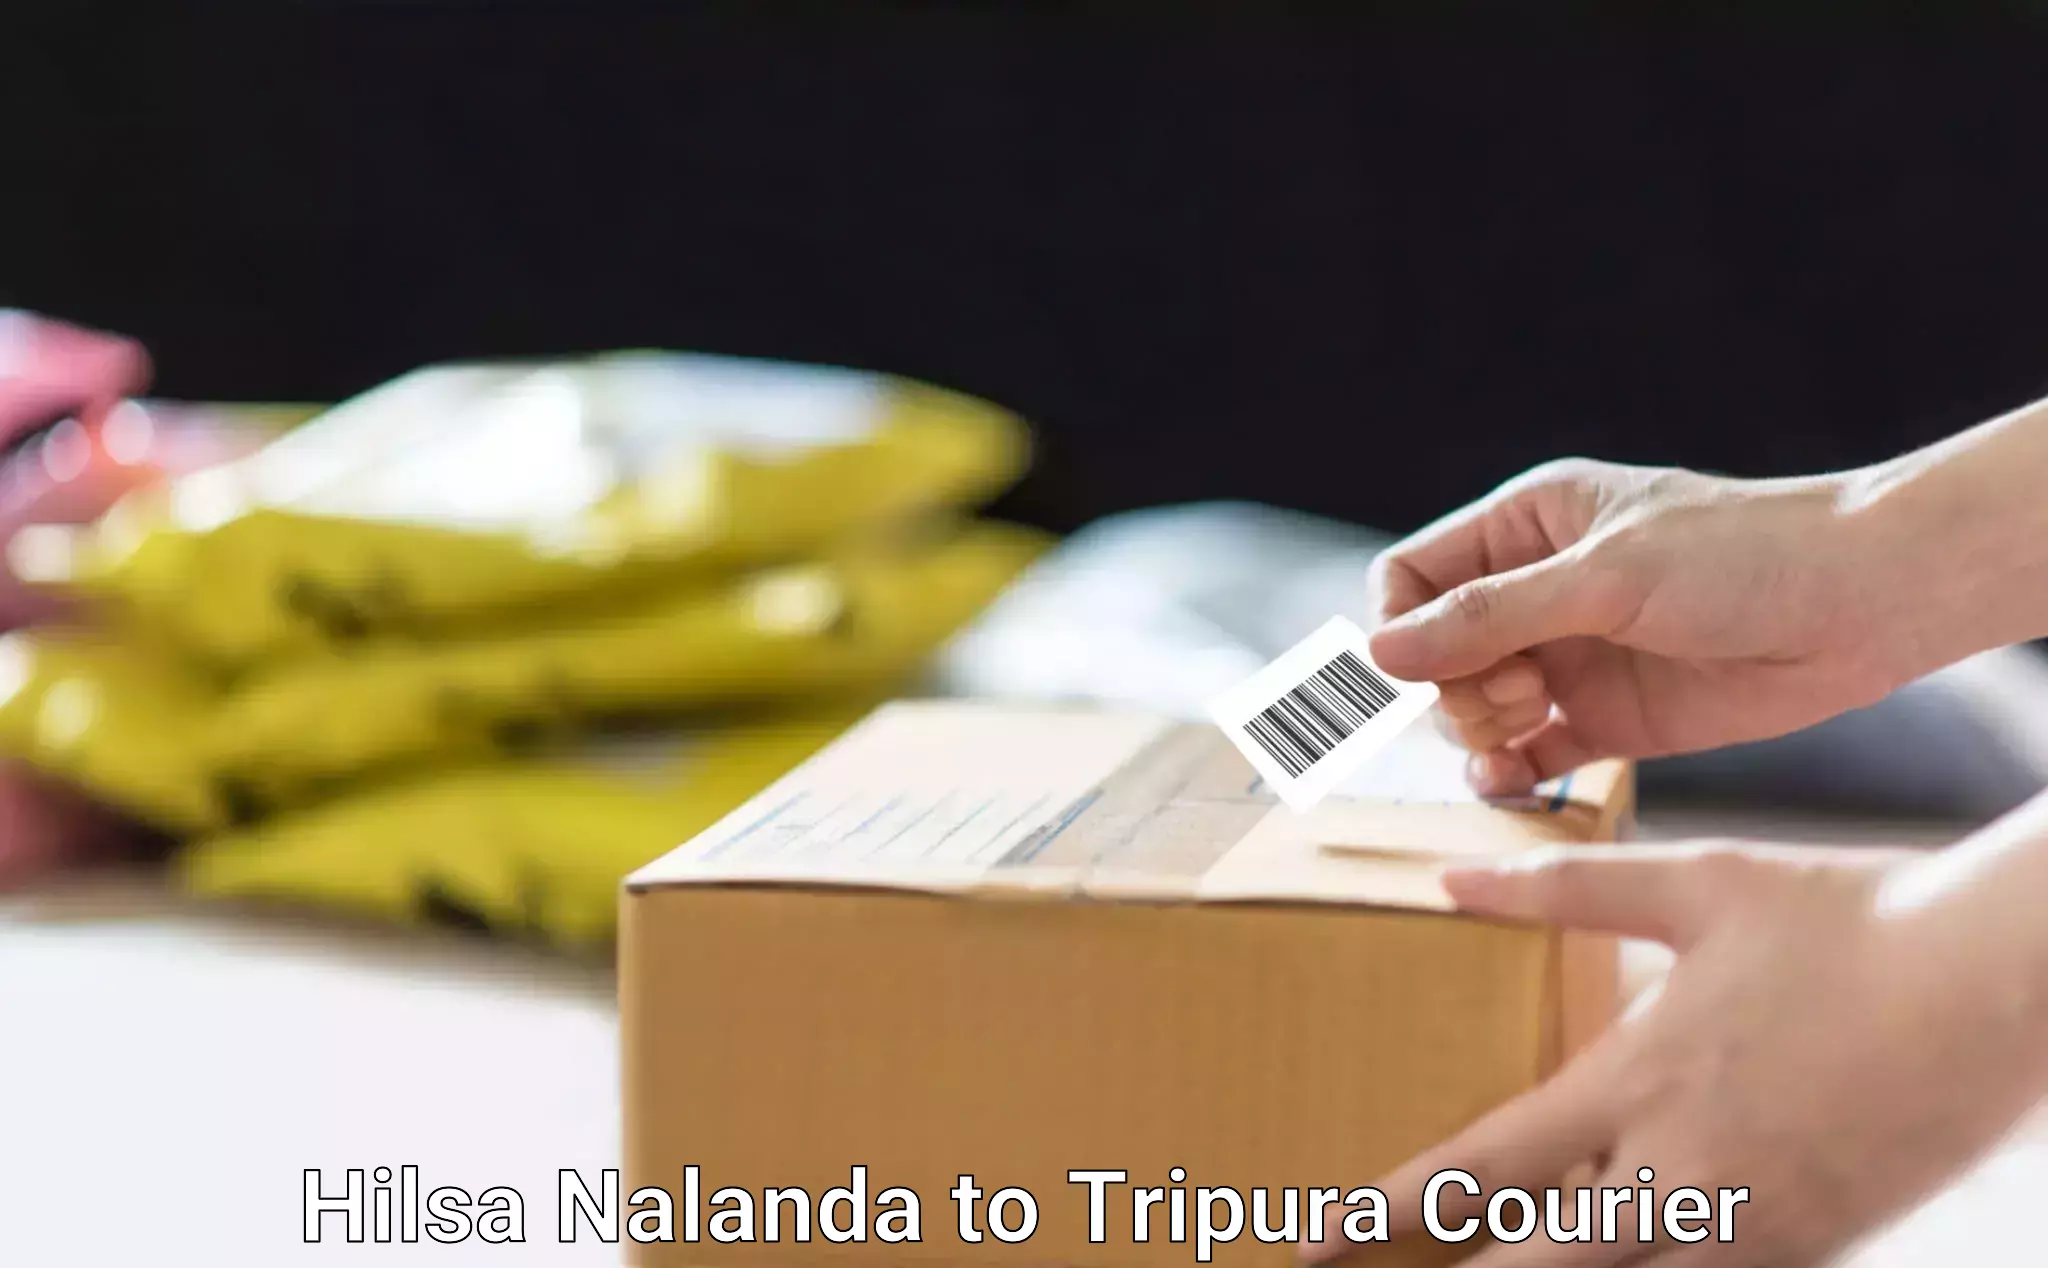 Furniture transport services Hilsa Nalanda to Aambasa